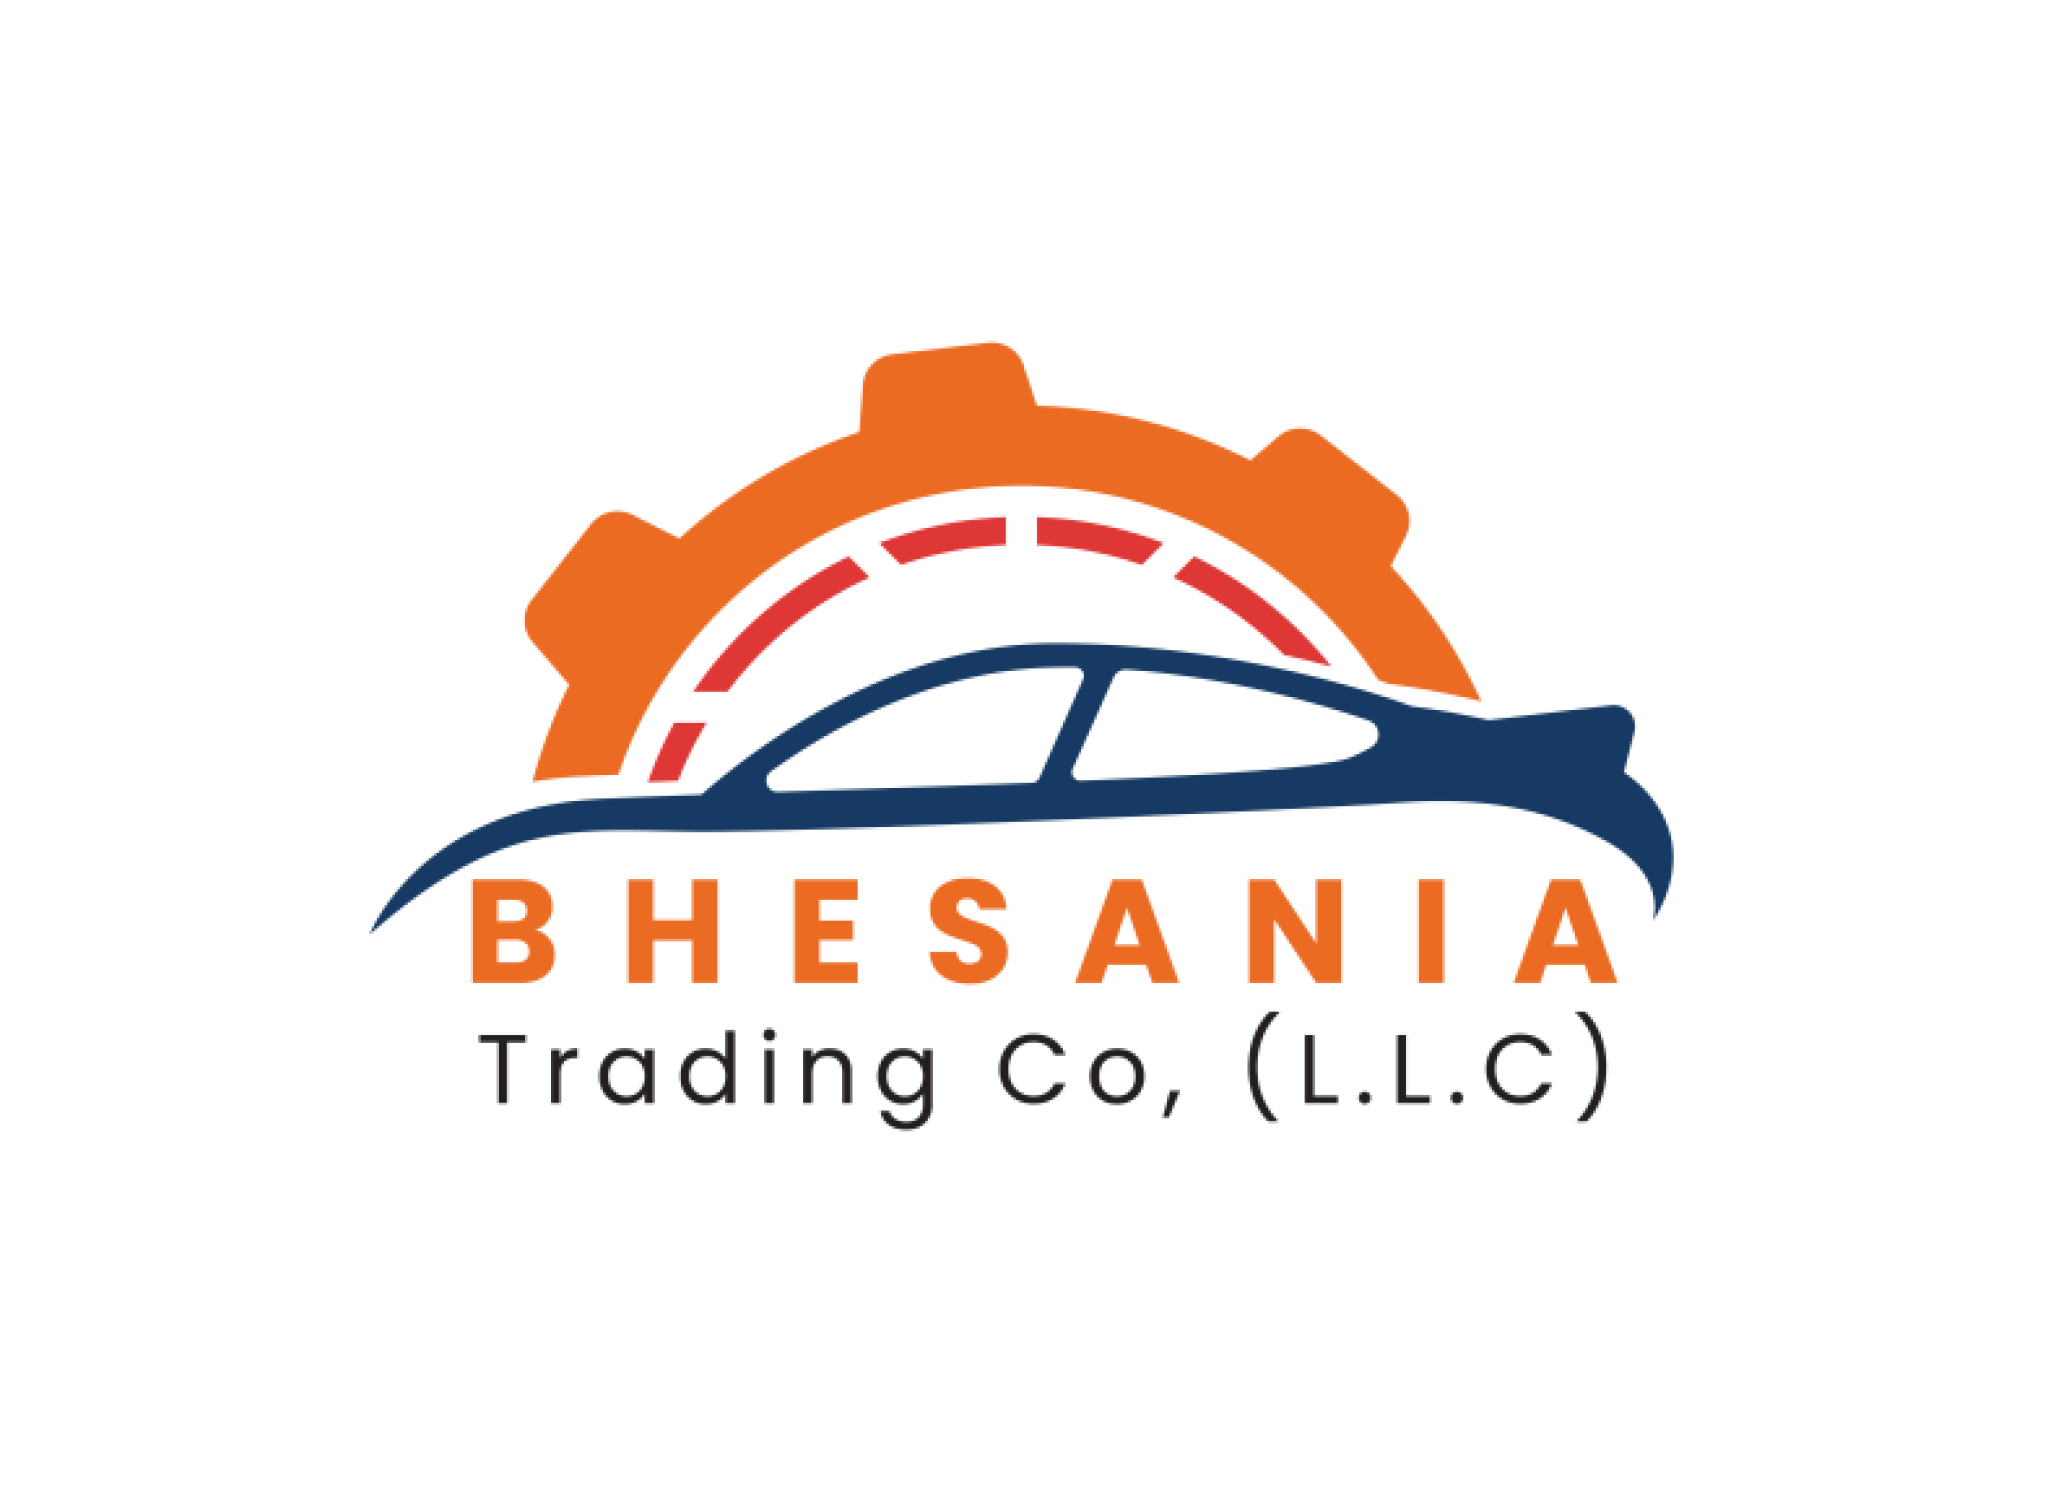 Bhesania Trdg Co